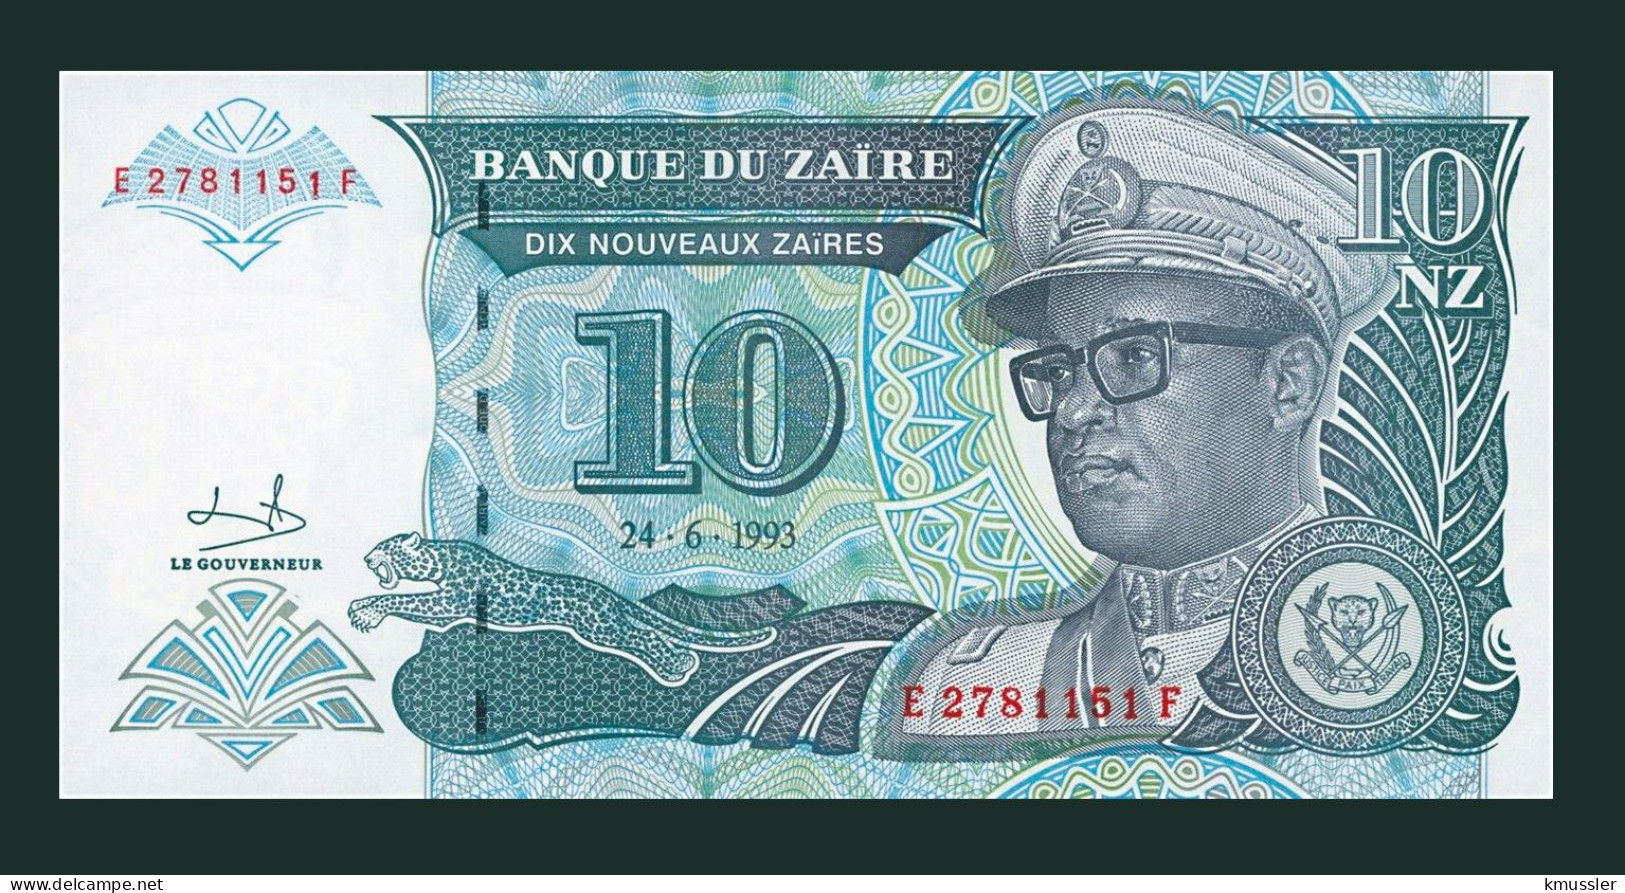 # # # Banknote Zaire 10 Nouveaux Zaires 1993 (P-54) G-D UNC # # # - Zaïre